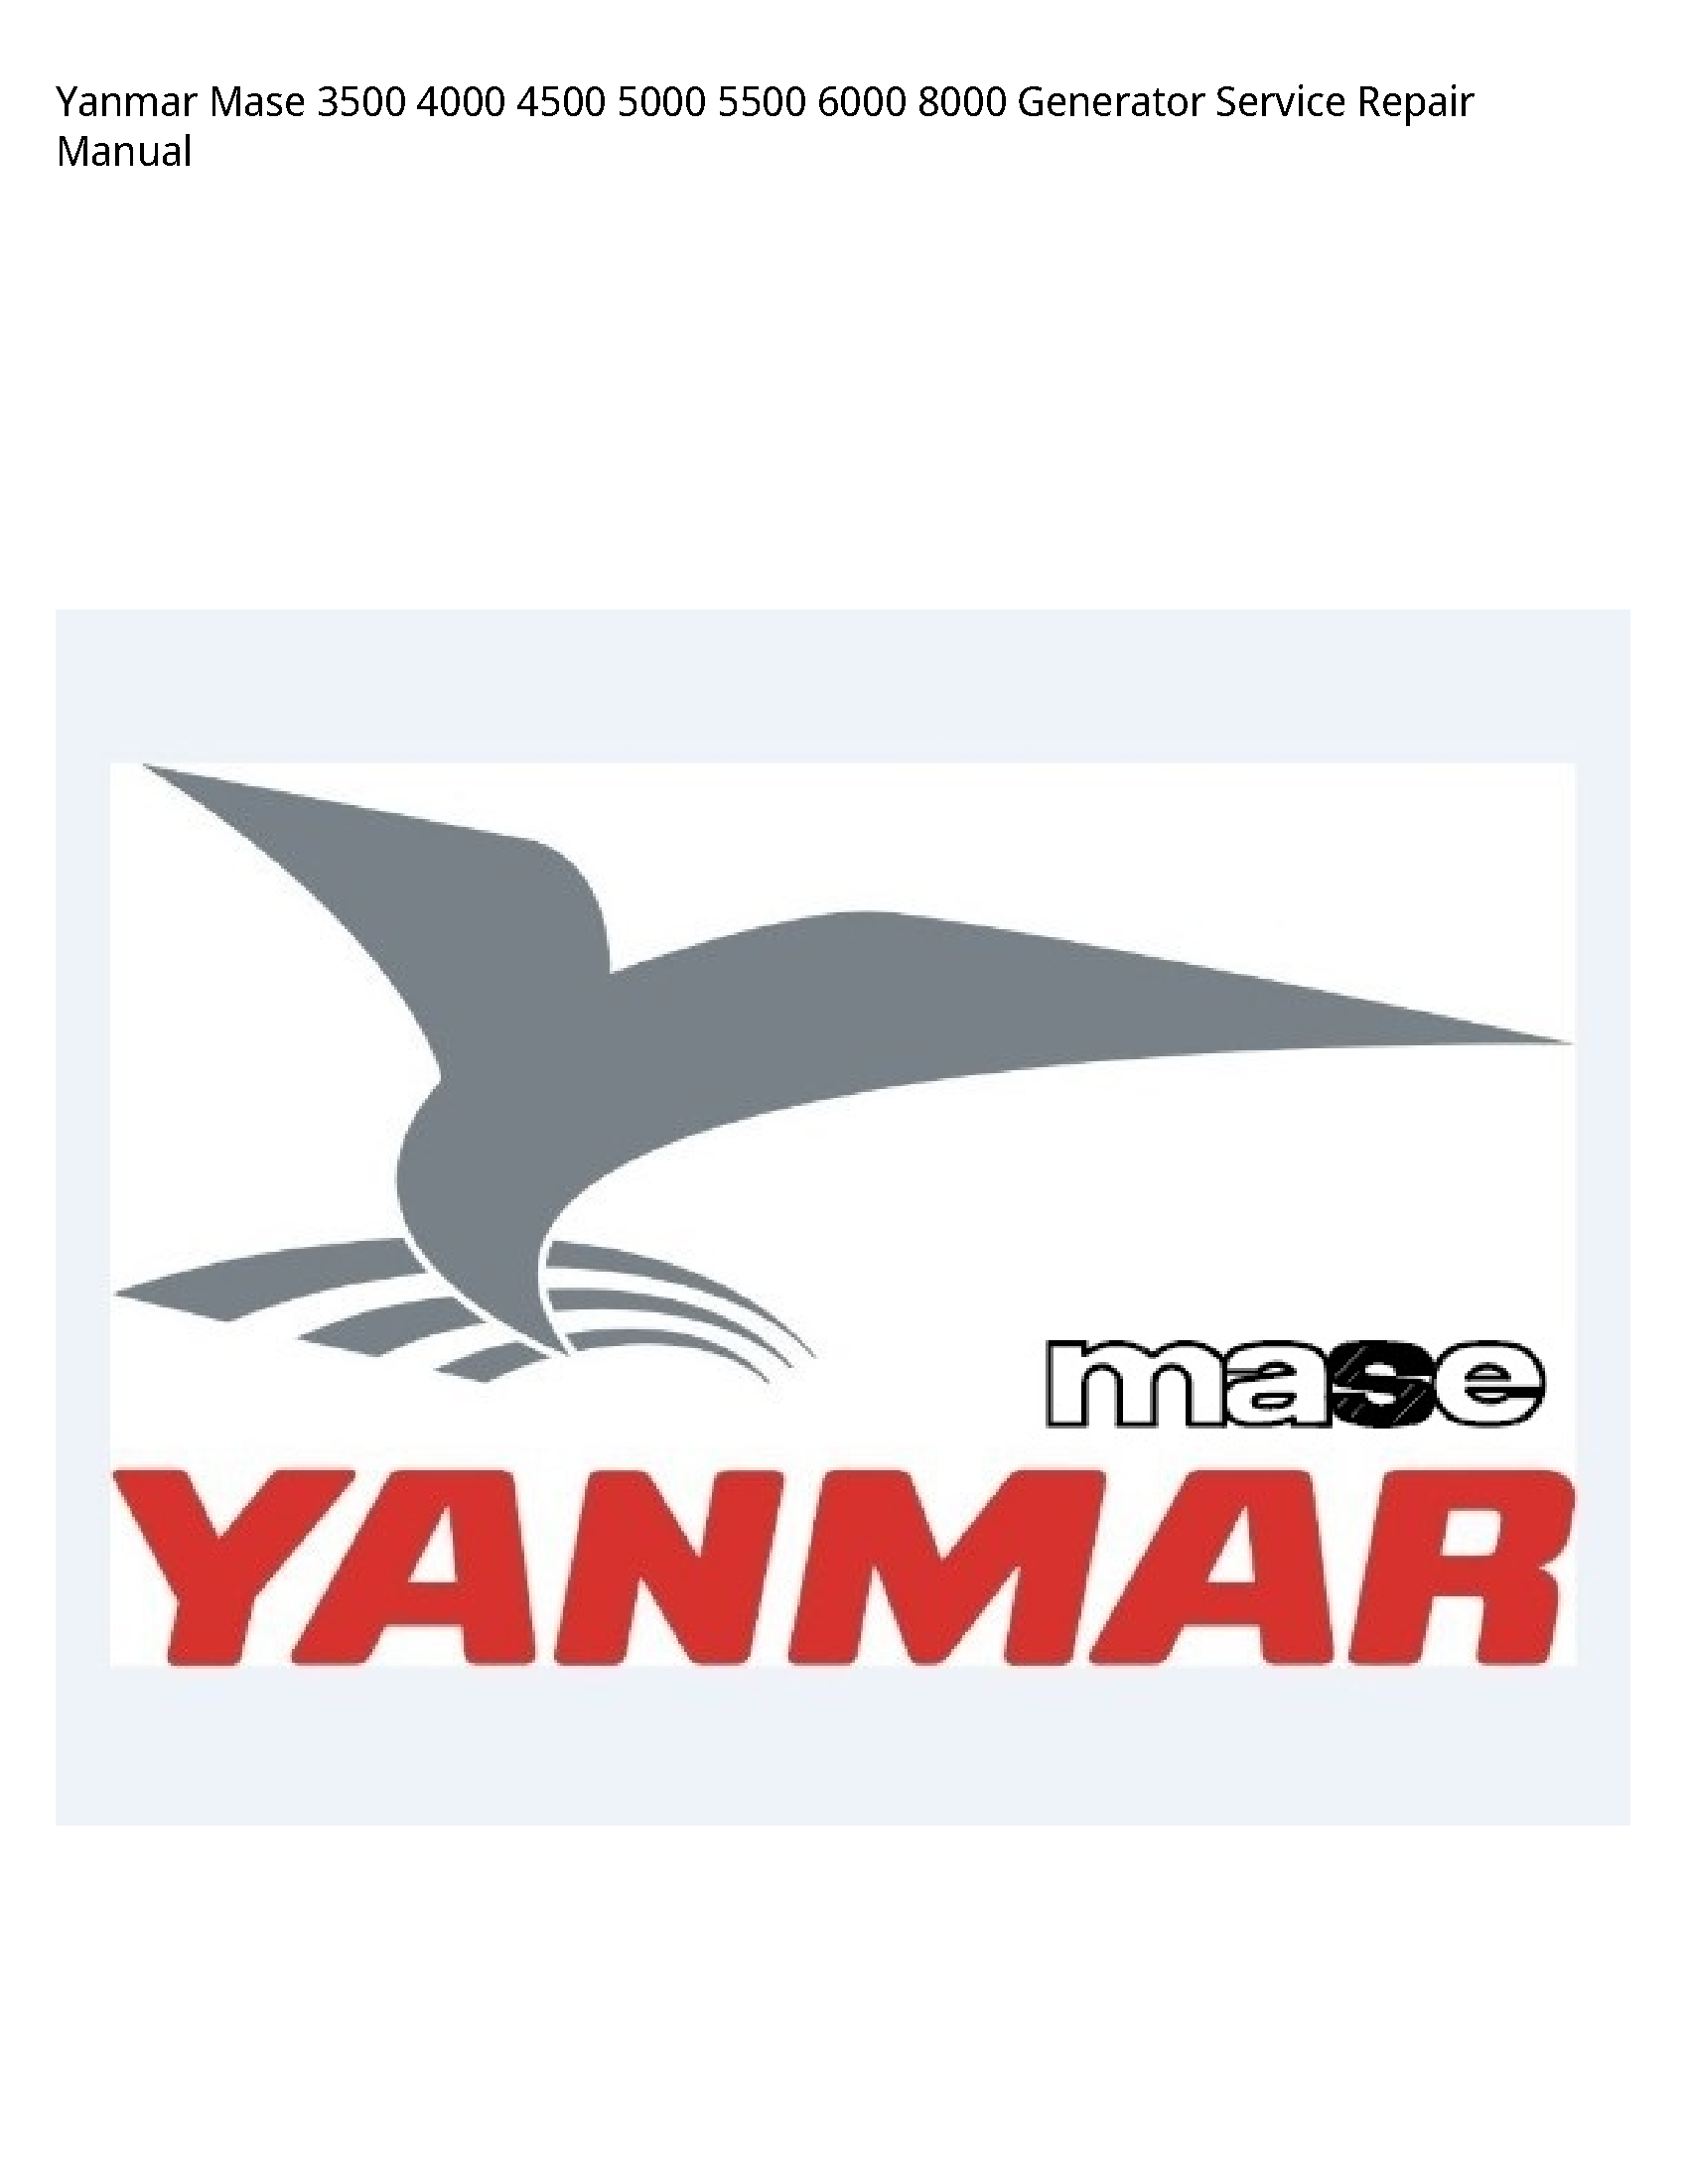 Yanmar 3500 Mase Generator manual